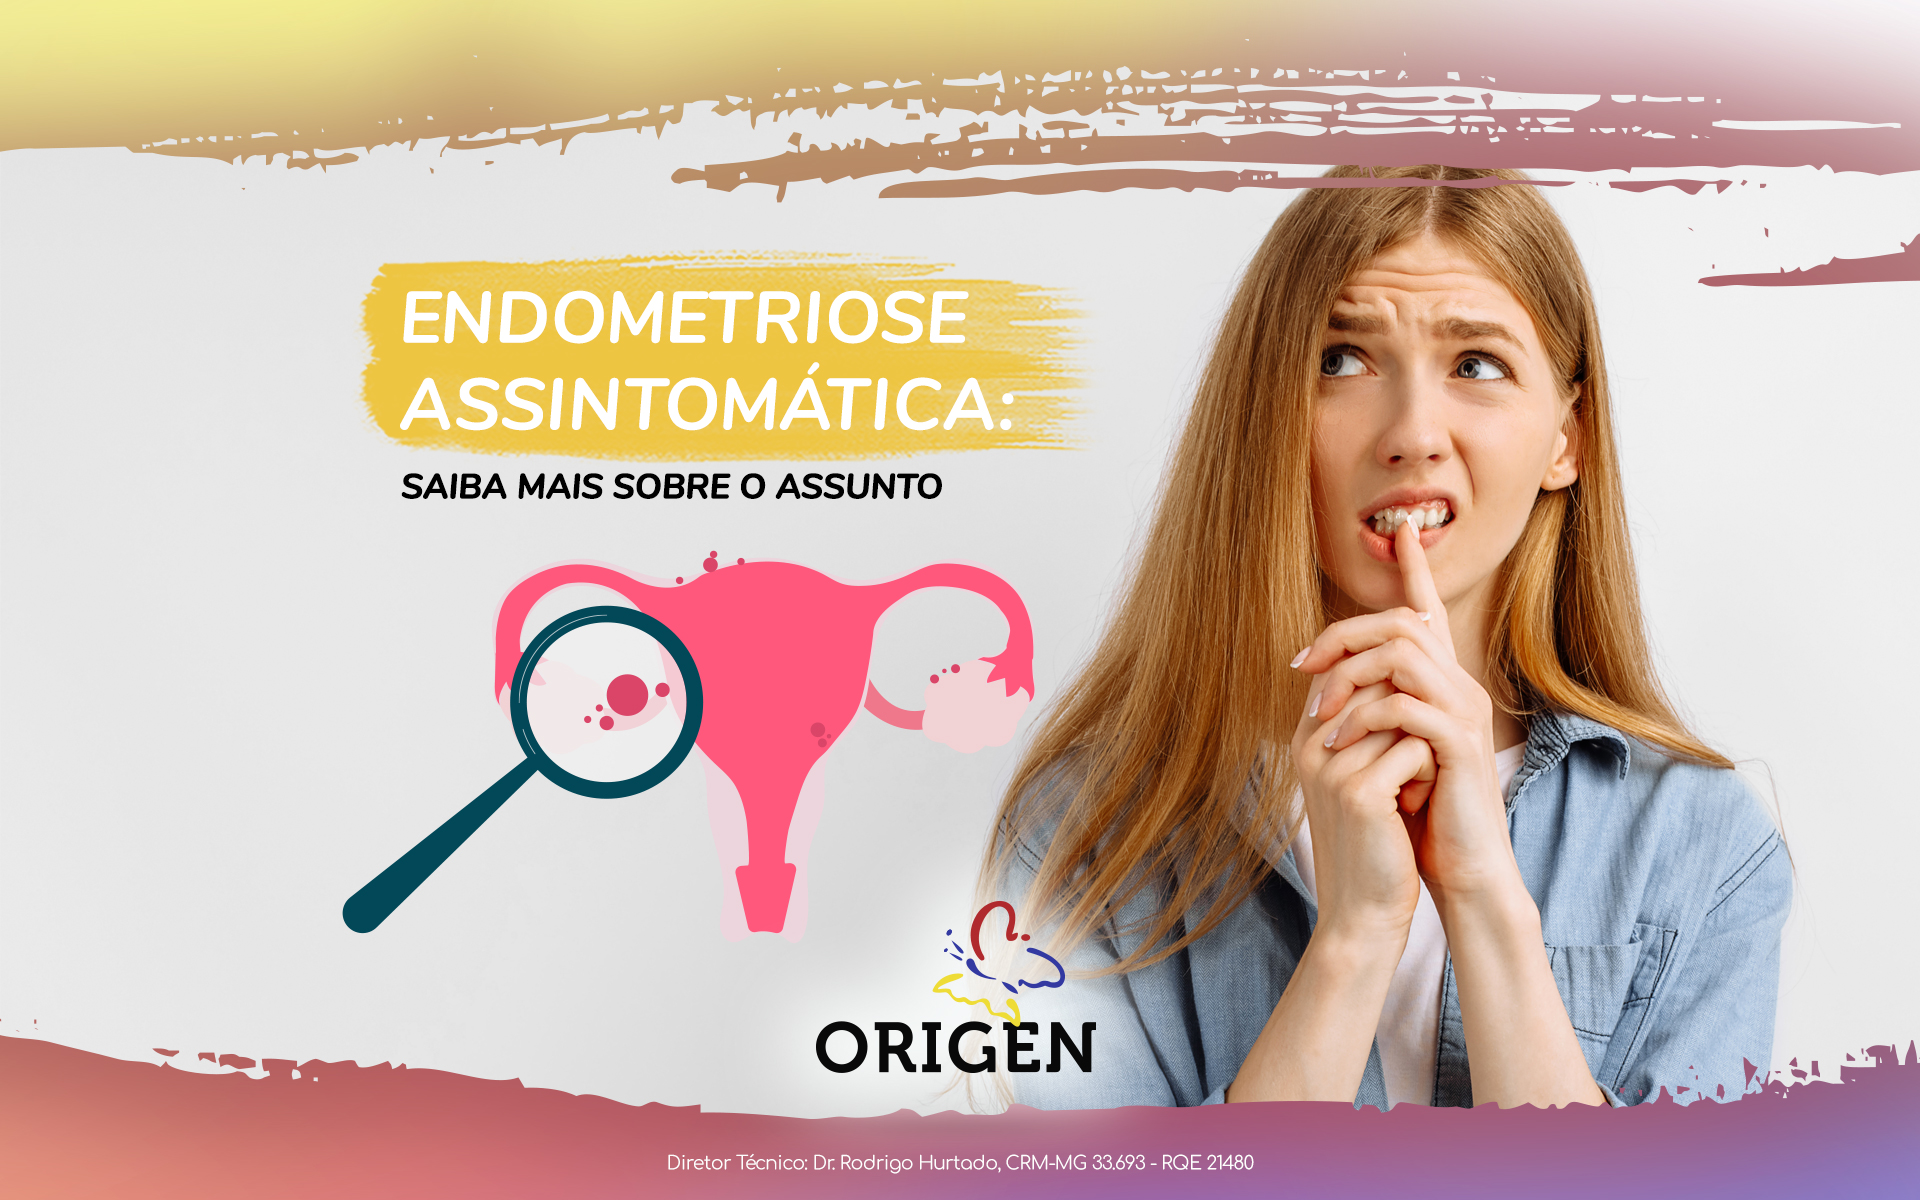 Endometriose assintomática: saiba mais sobre o assunto